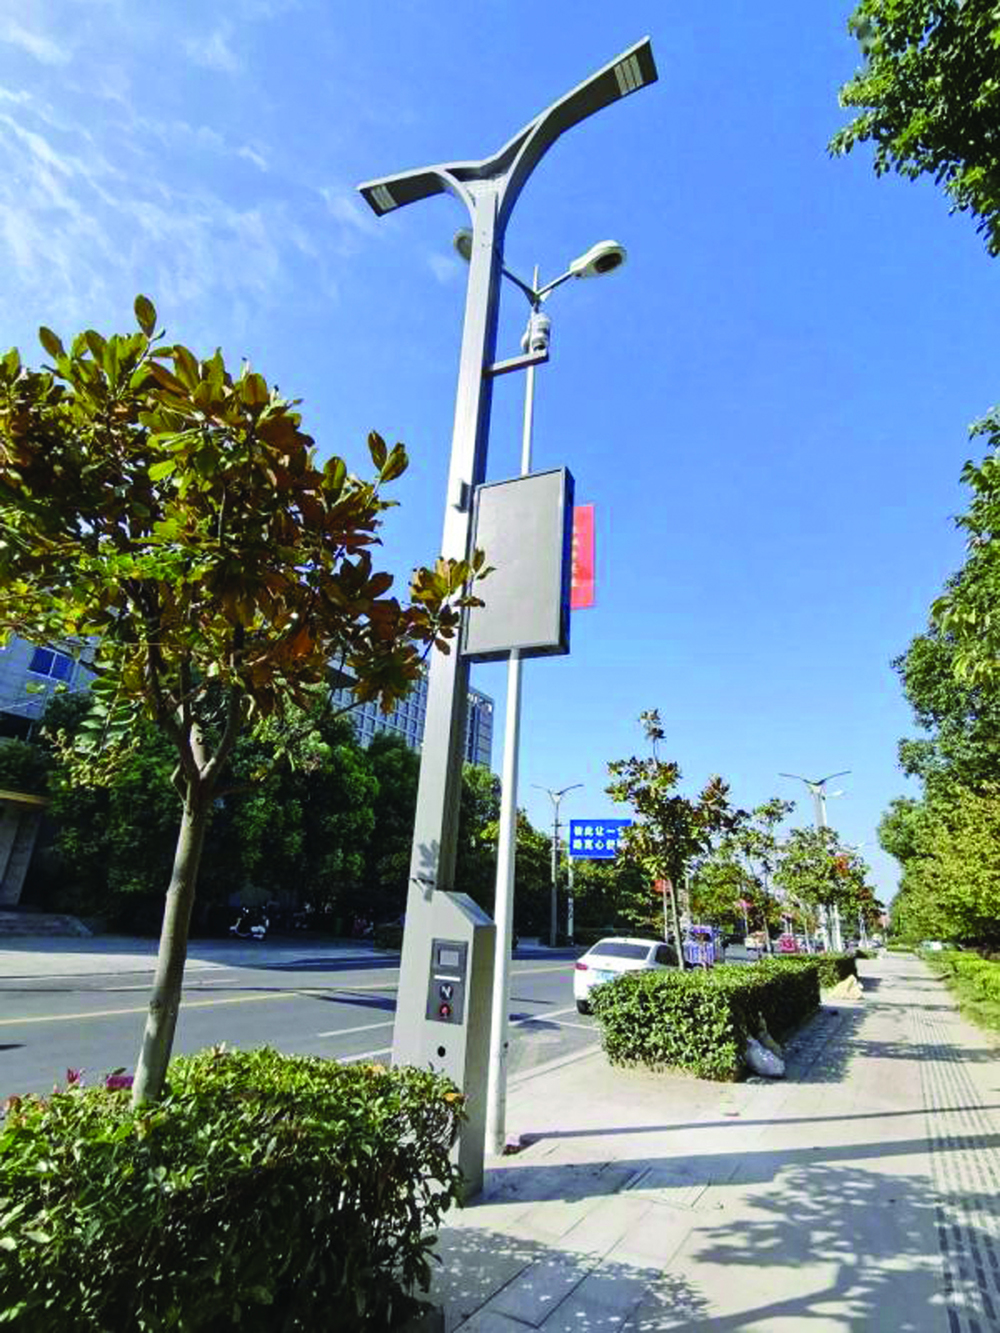 Inteligentna lampa uliczna 5g realizuje automatyczny alarm, ładowanie i inne funkcje